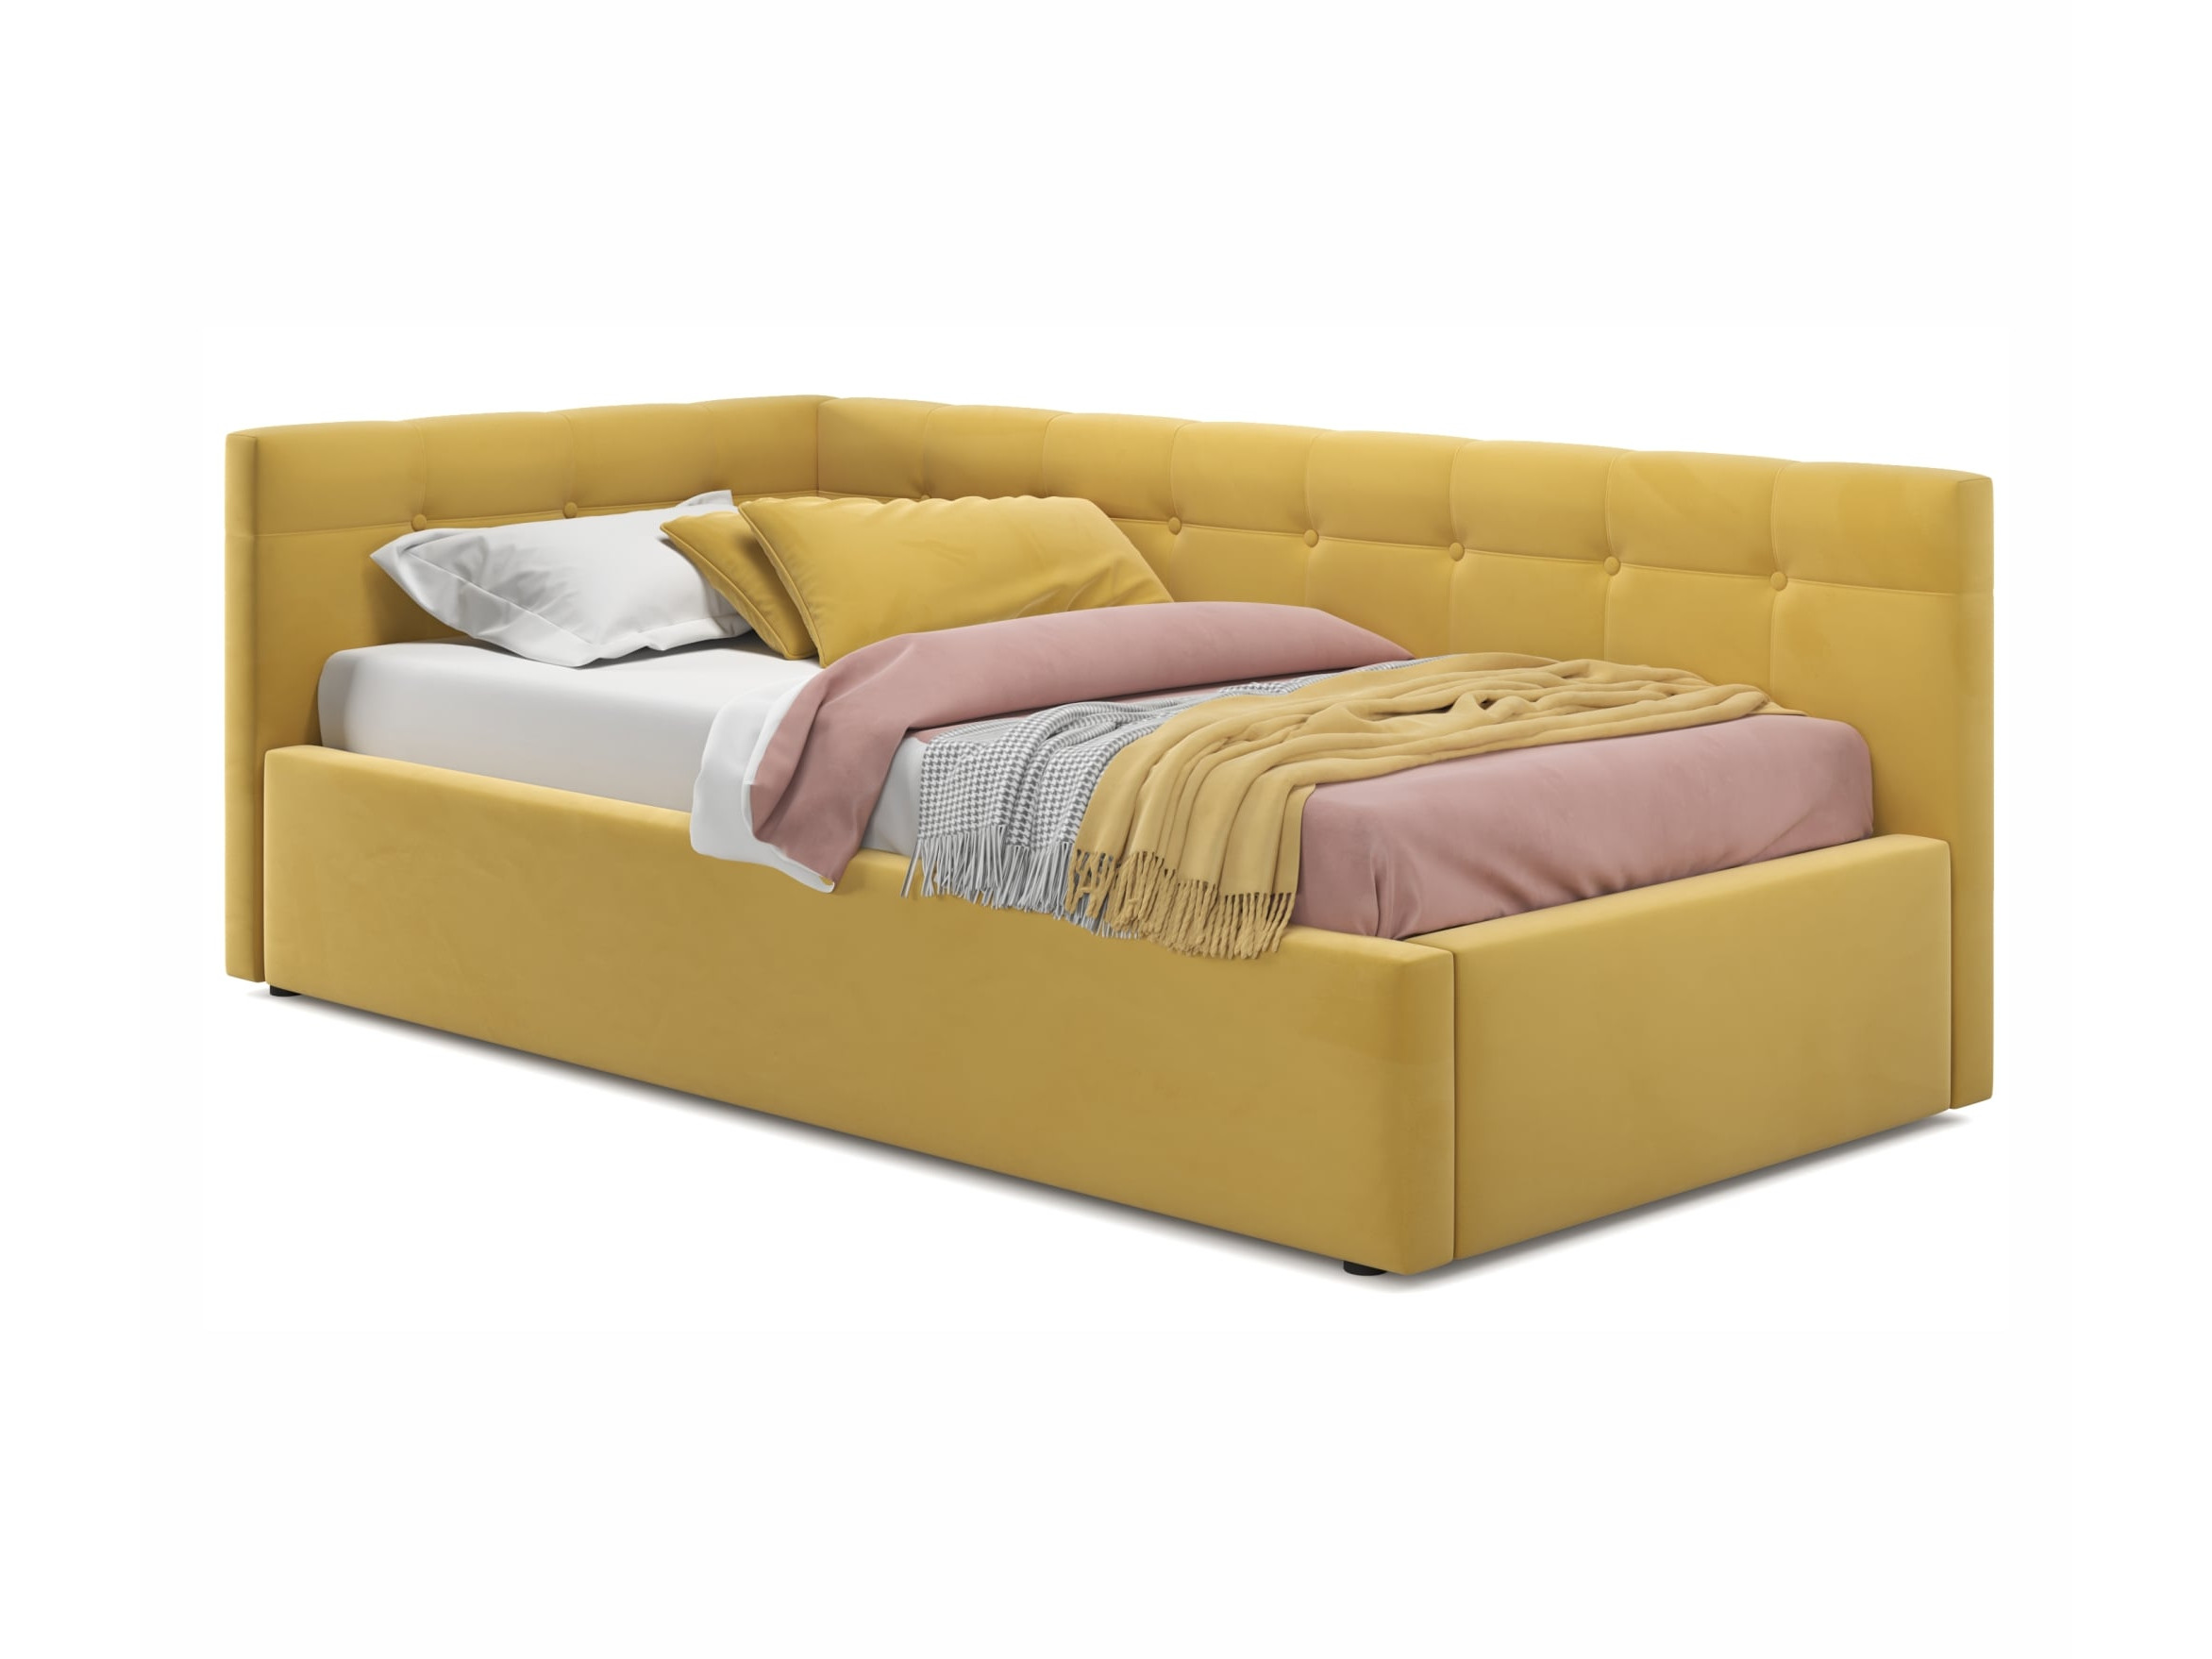 Односпальная кровать-тахта Bonna 900 желтая с подъемным механизмом и матрасом ГОСТ желтый, Желтый, Велюр, ДСП